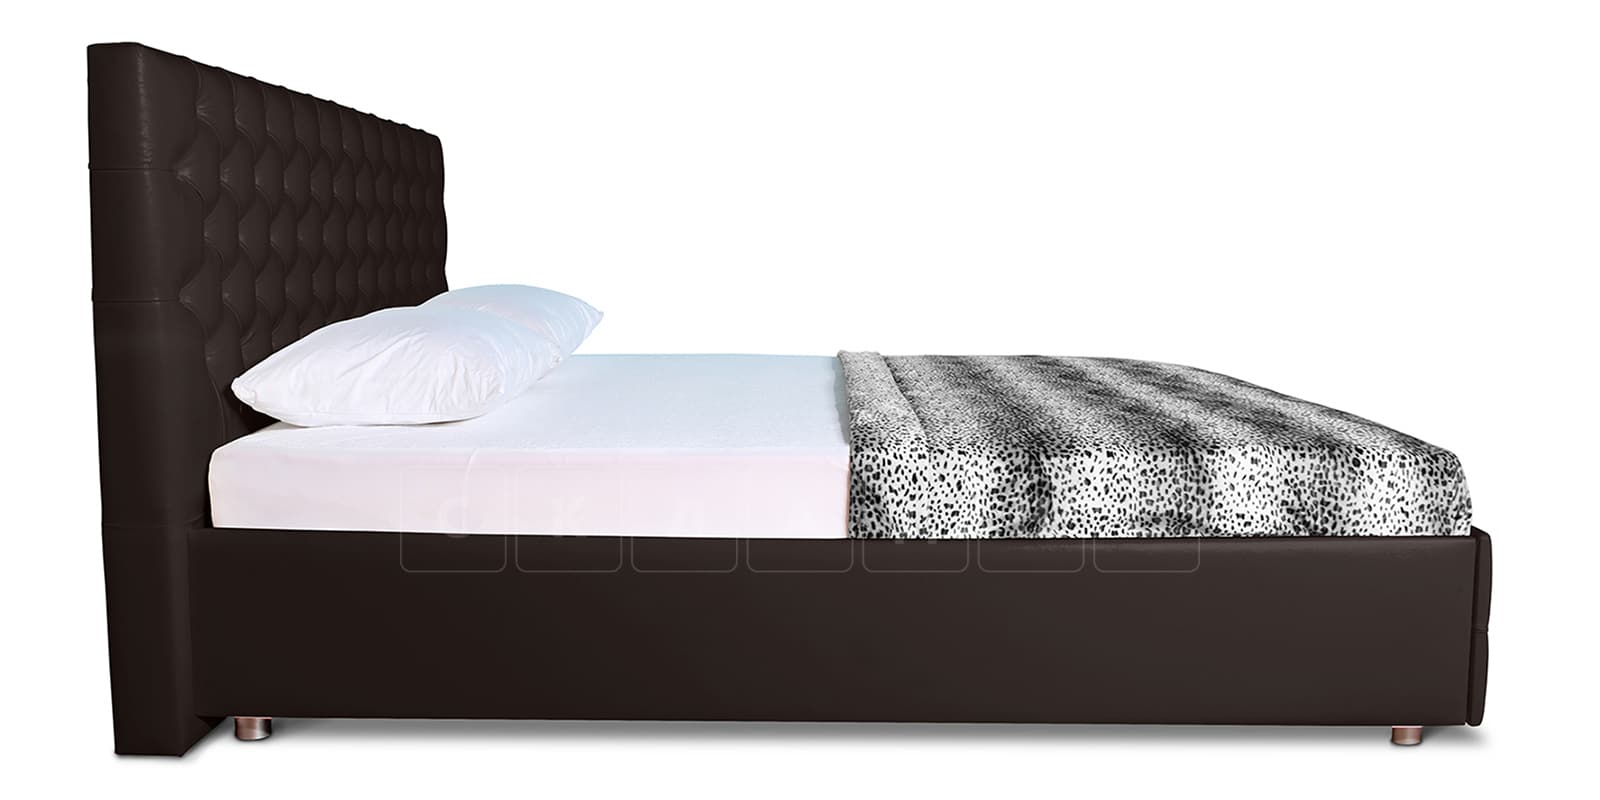 Мягкая кровать Малибу 160 см экокожа шоколадного цвета вариант 4 фото 4 | интернет-магазин Складно